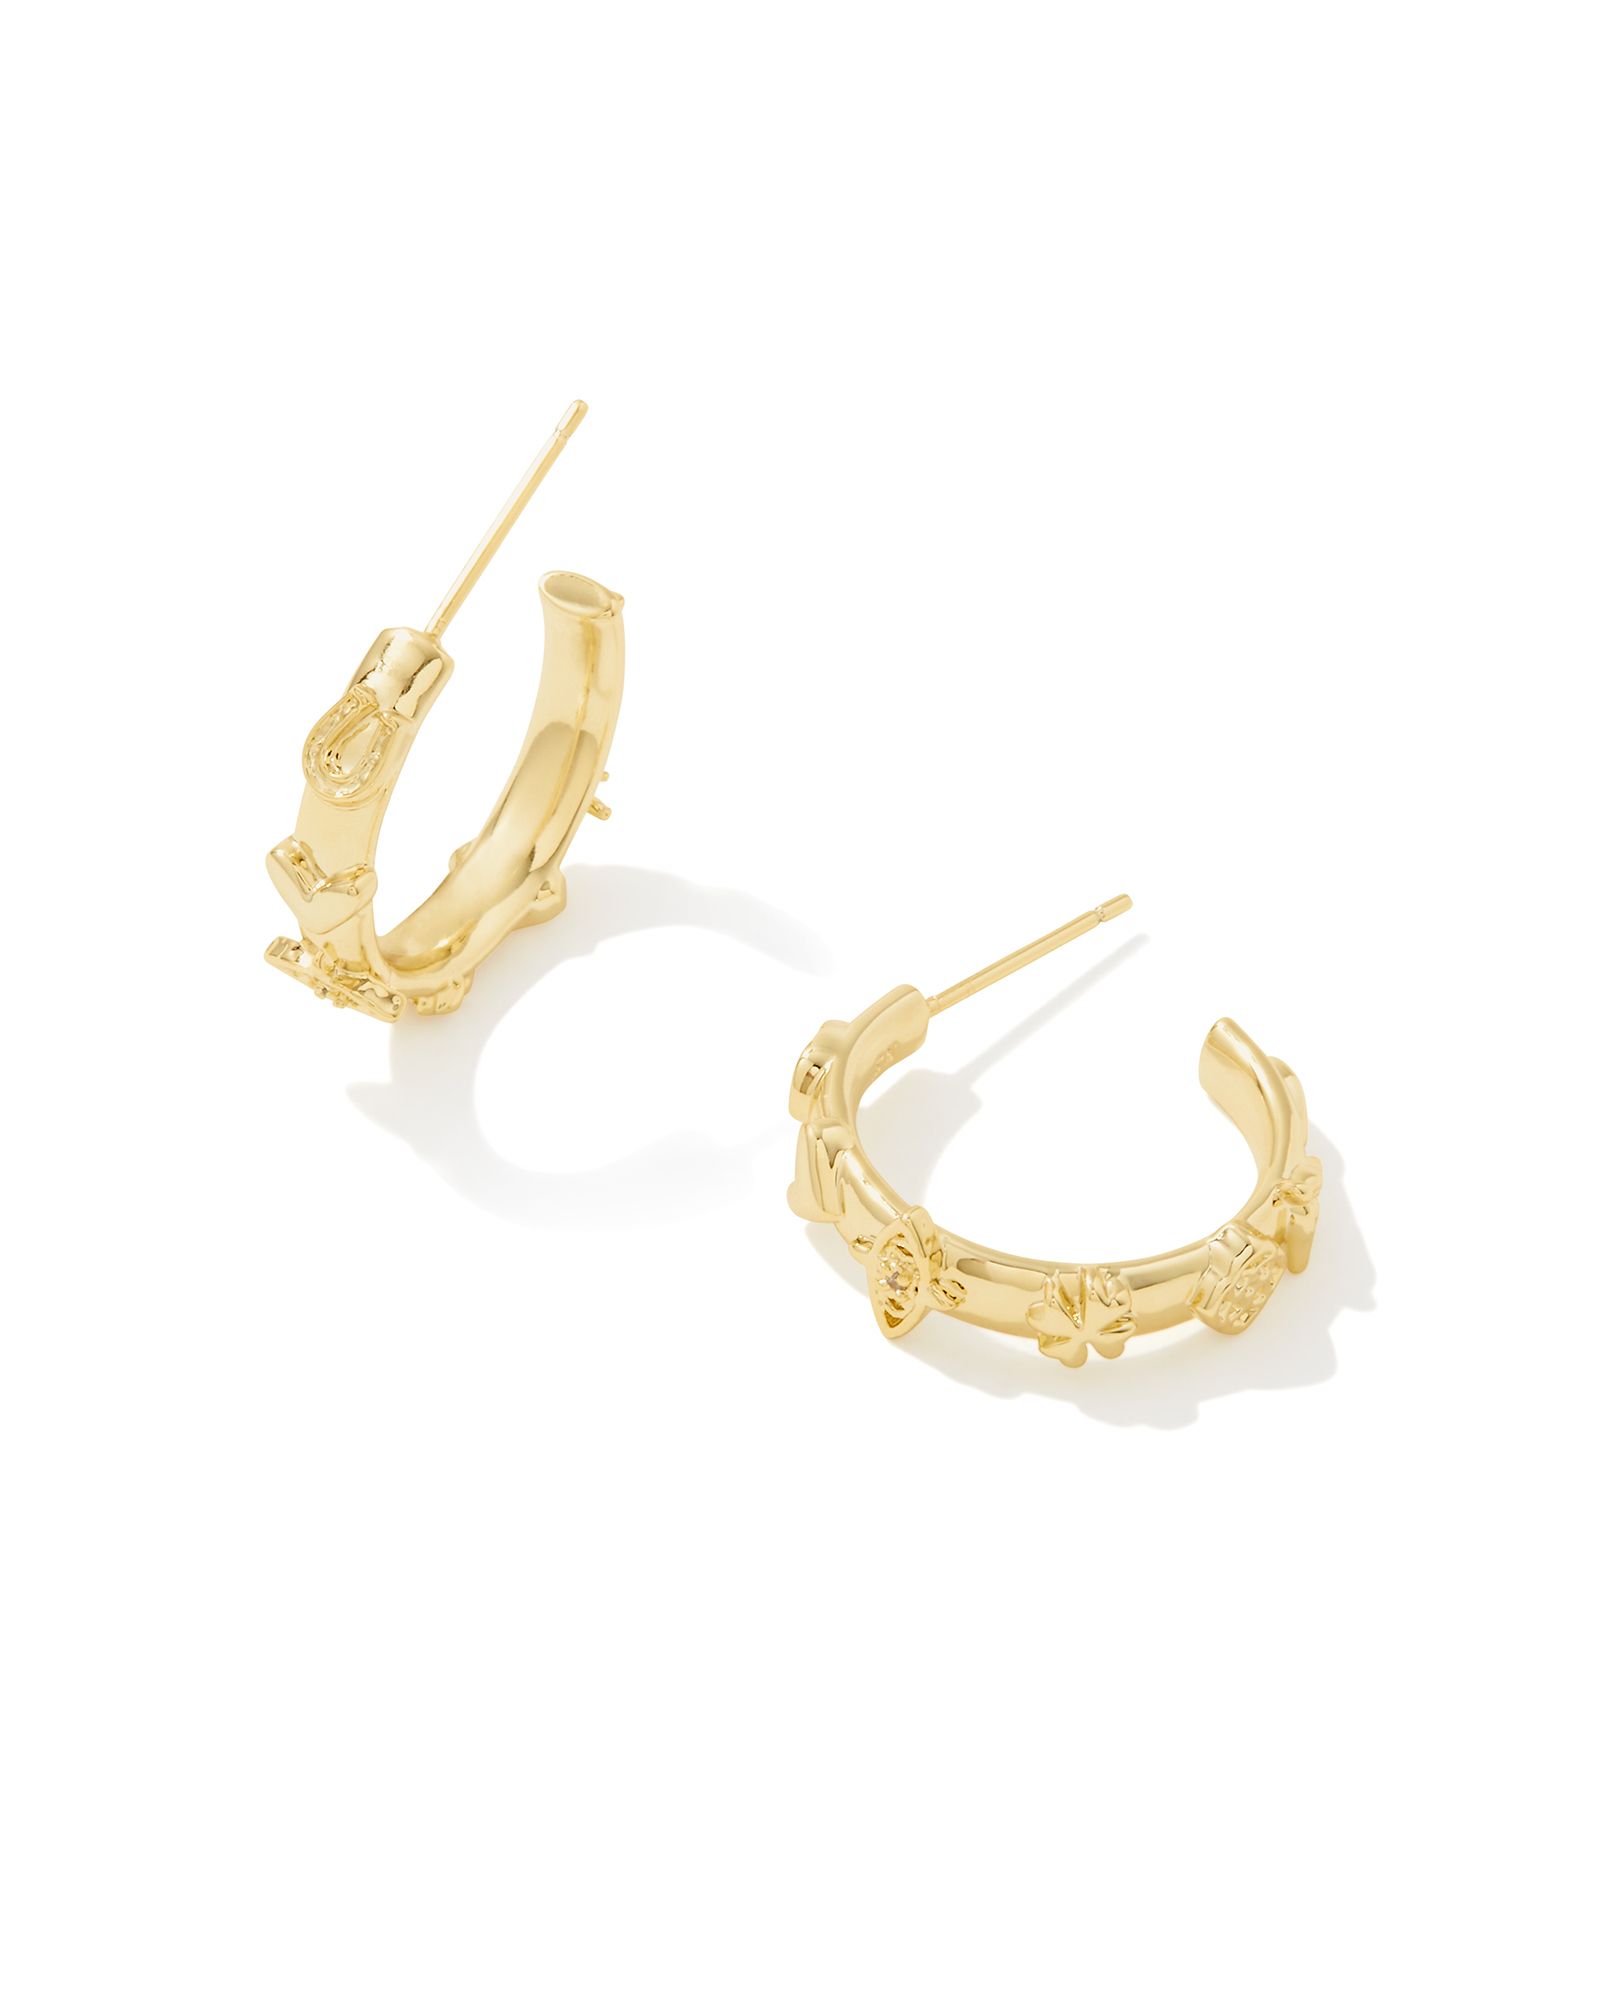 Beatrix Small Hoop Earrings in Gold | Kendra Scott | Kendra Scott